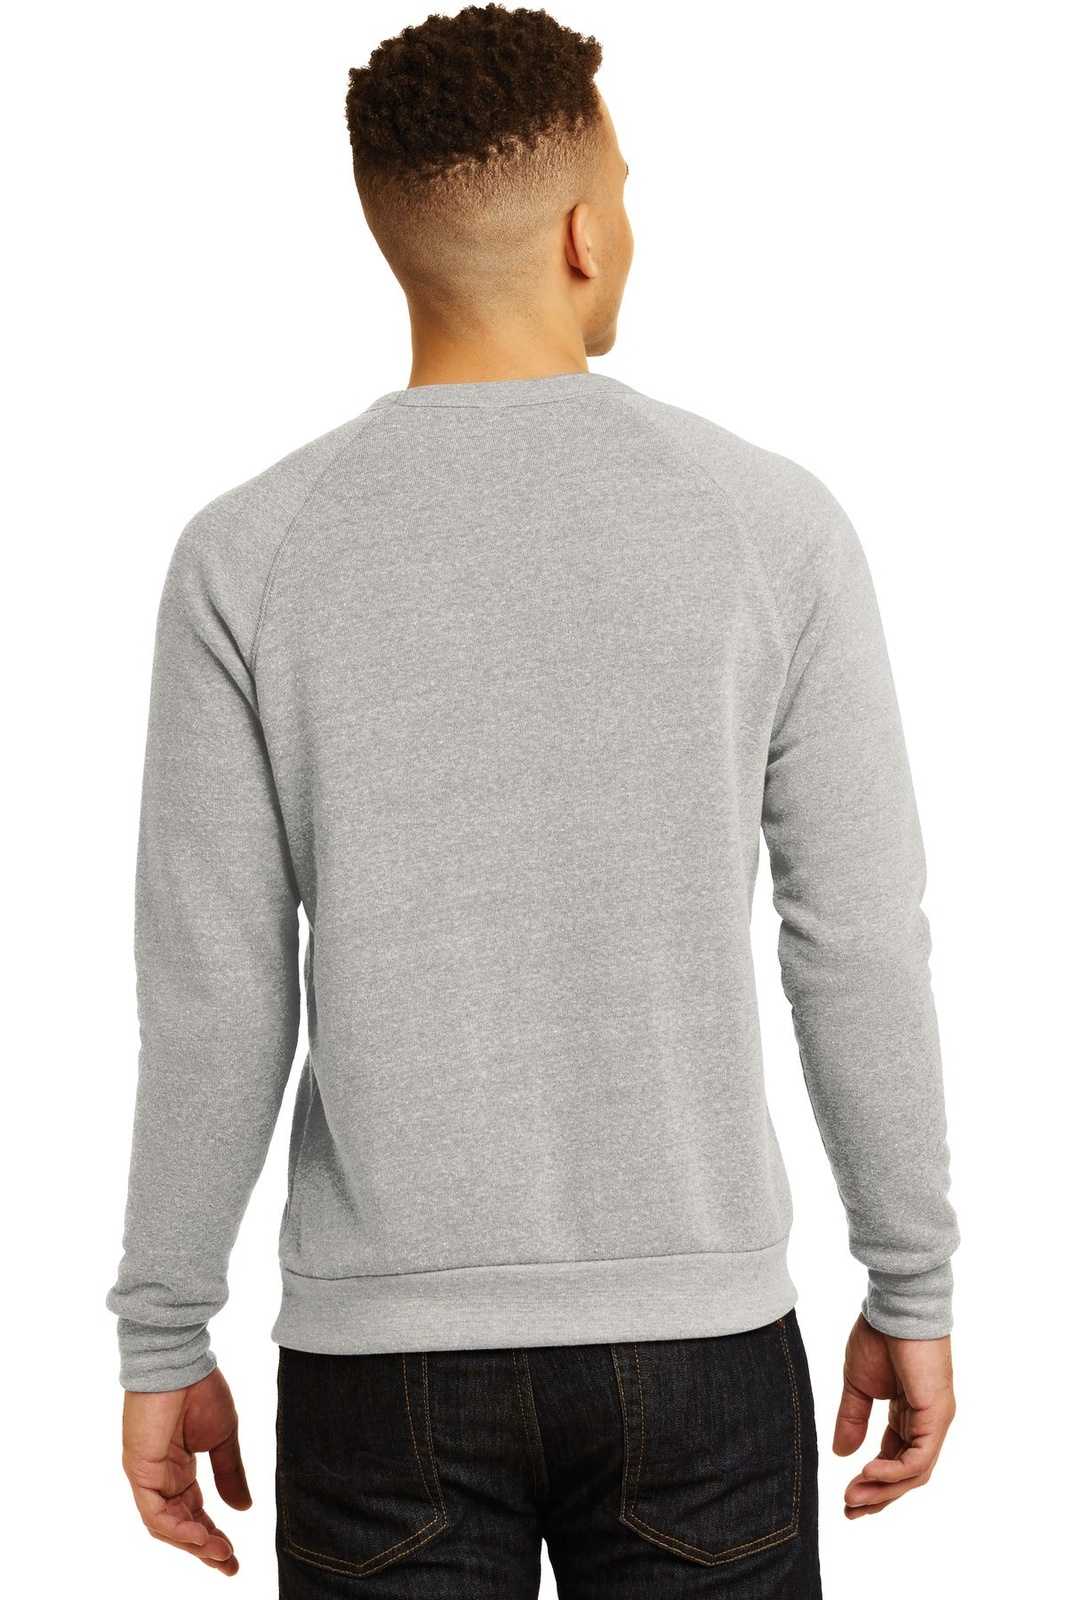 Alternative AA9575 Champ Eco-Fleece Sweatshirt - Eco Oatmeal Gray - HIT a Double - 2